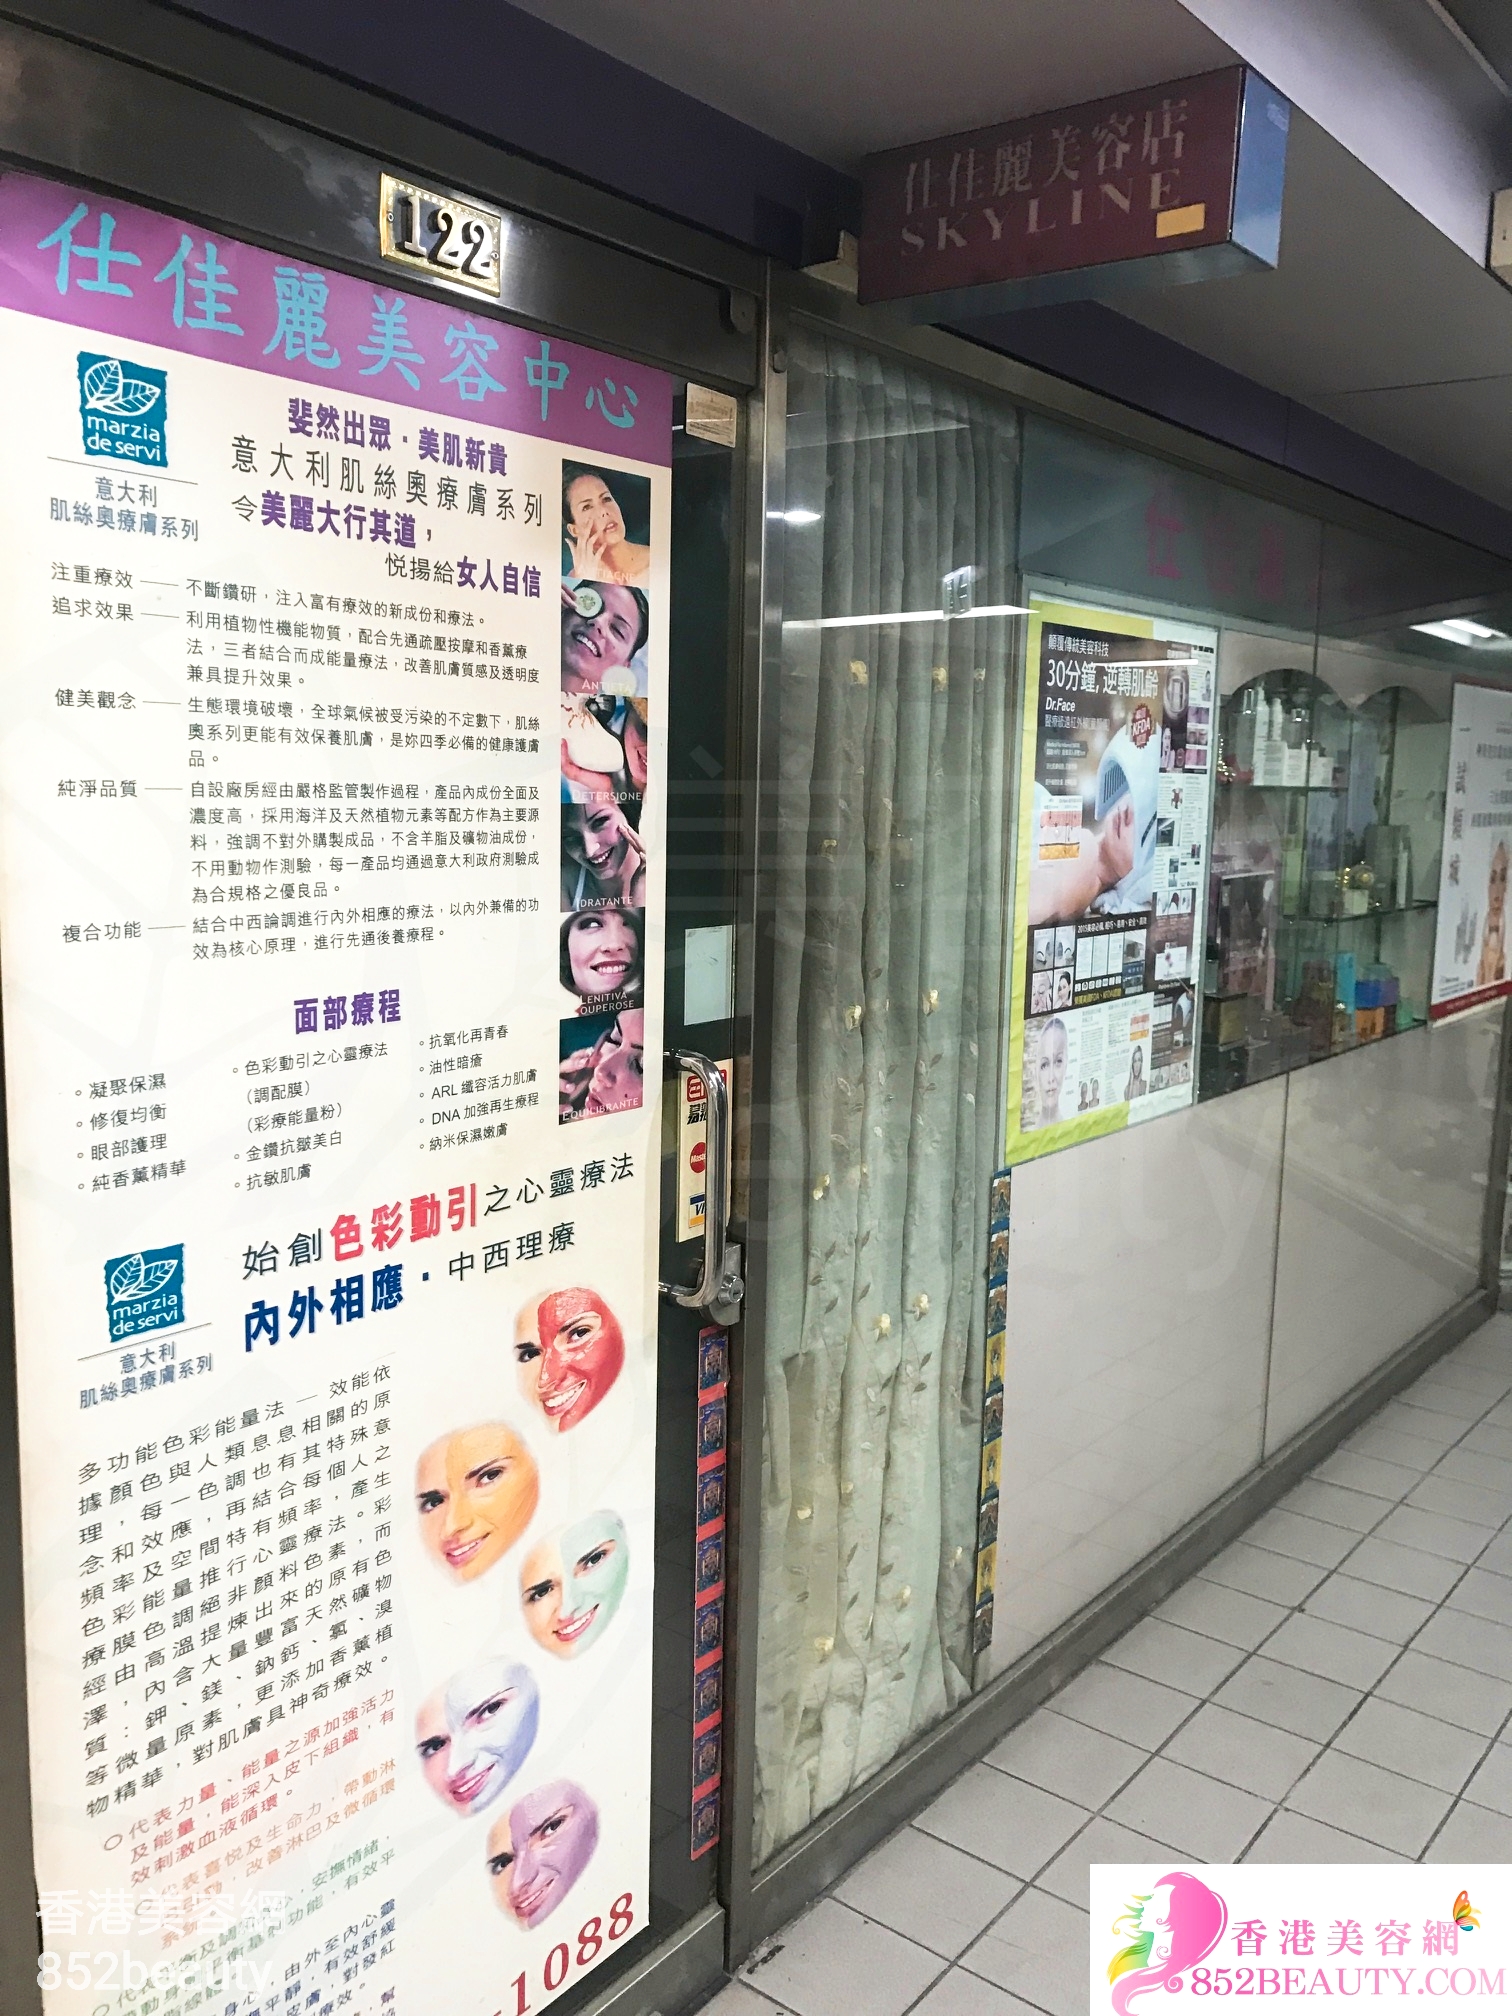 香港美容網 Hong Kong Beauty Salon 美容院 / 美容師: 仕佳麗美容中心